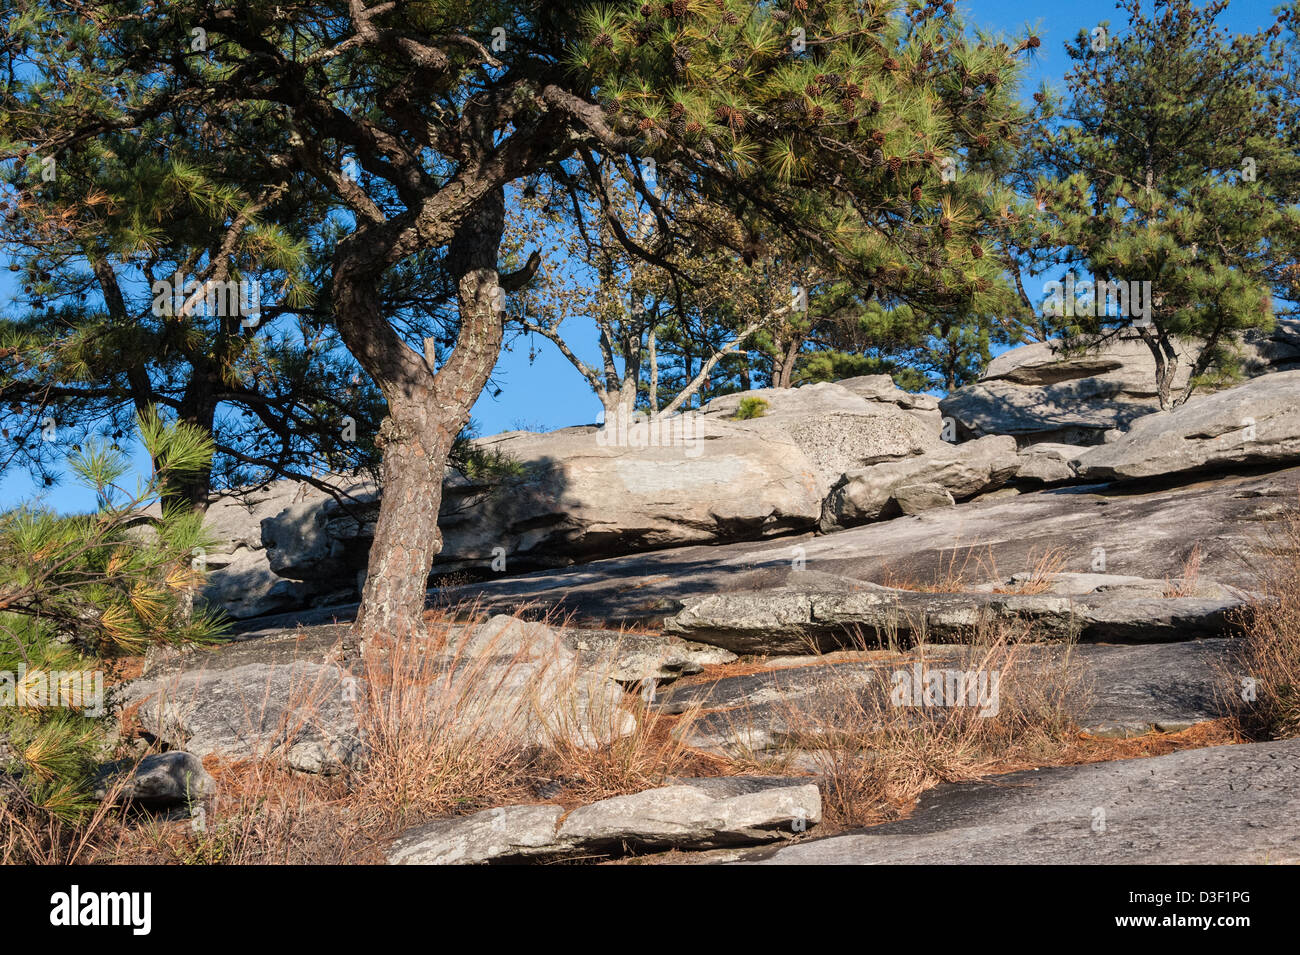 Les roches ensoleillées et de pins le long du sentier de randonnée près de la crête de la montagne de pierre à Stone Mountain Park près d'Atlanta, Georgia, USA Banque D'Images